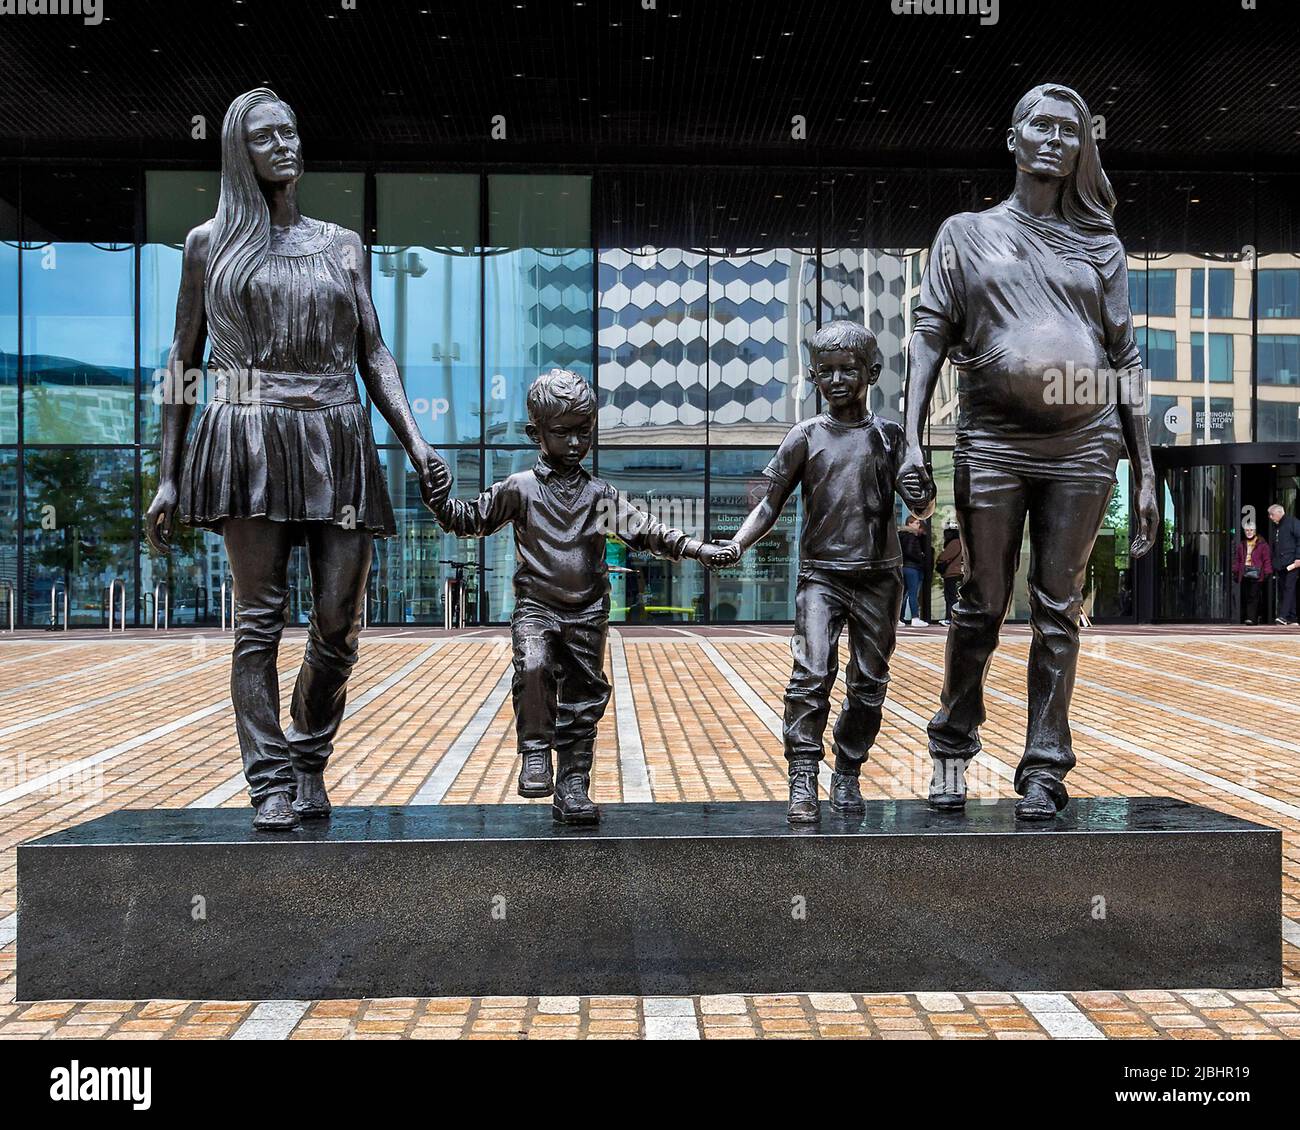 Eine Real Birmingham Familie ist eine Bronzestatue der Künstlerin Gillian Wearing. Es vermittelt die Idee, dass das, was eine Familie ausmacht, nicht fixiert ist. Stockfoto